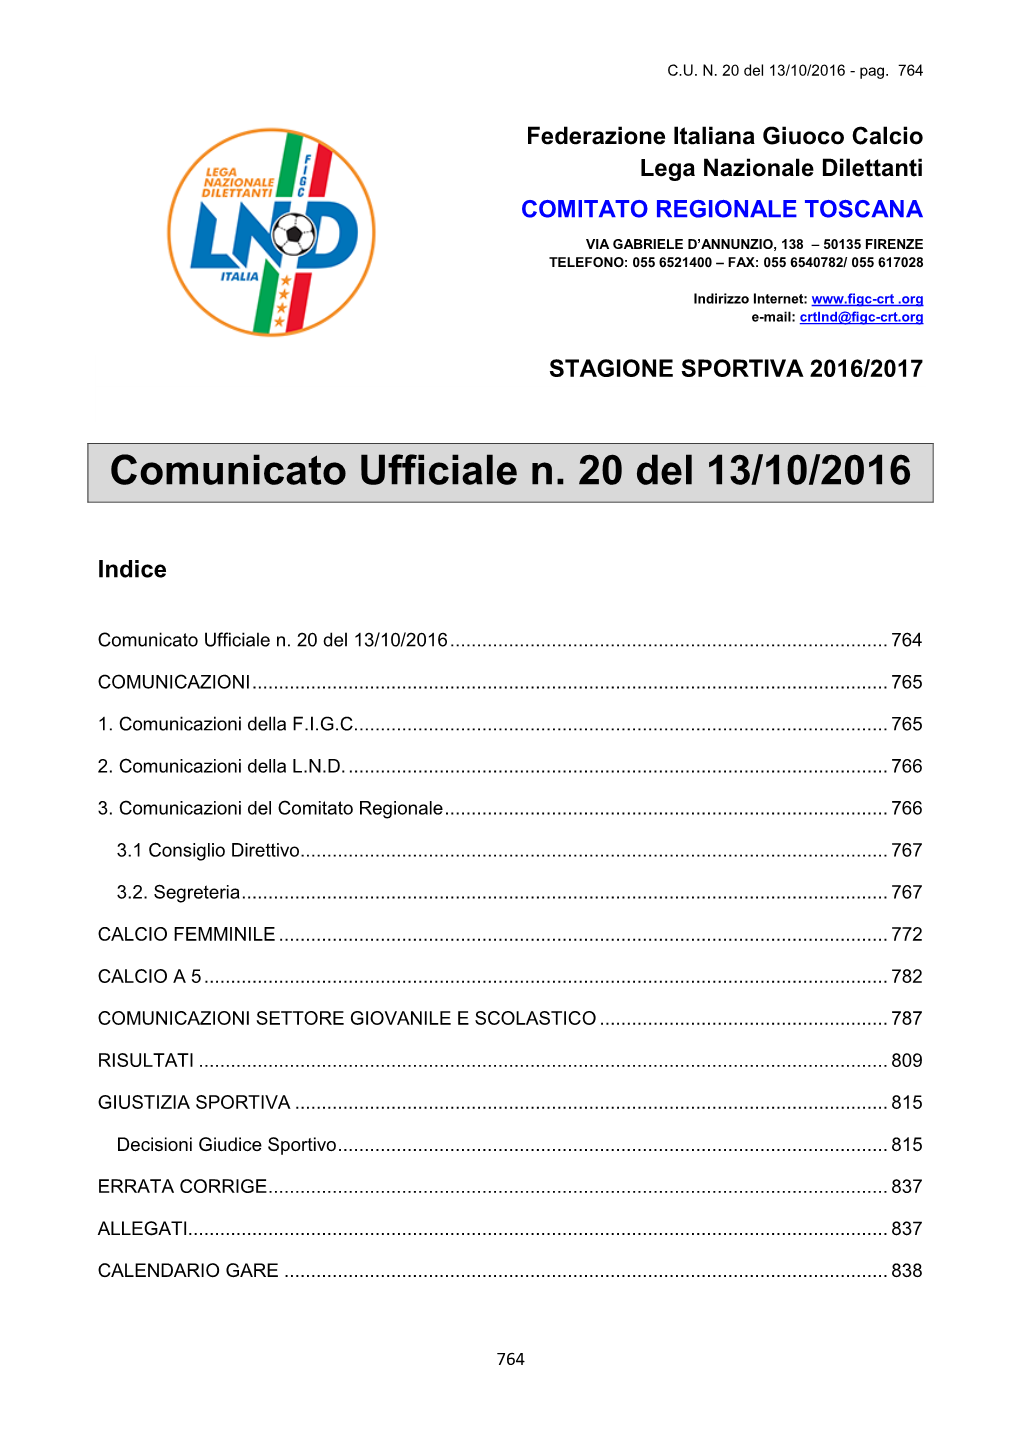 Comunicato Ufficiale N. 20 Del 13/10/2016